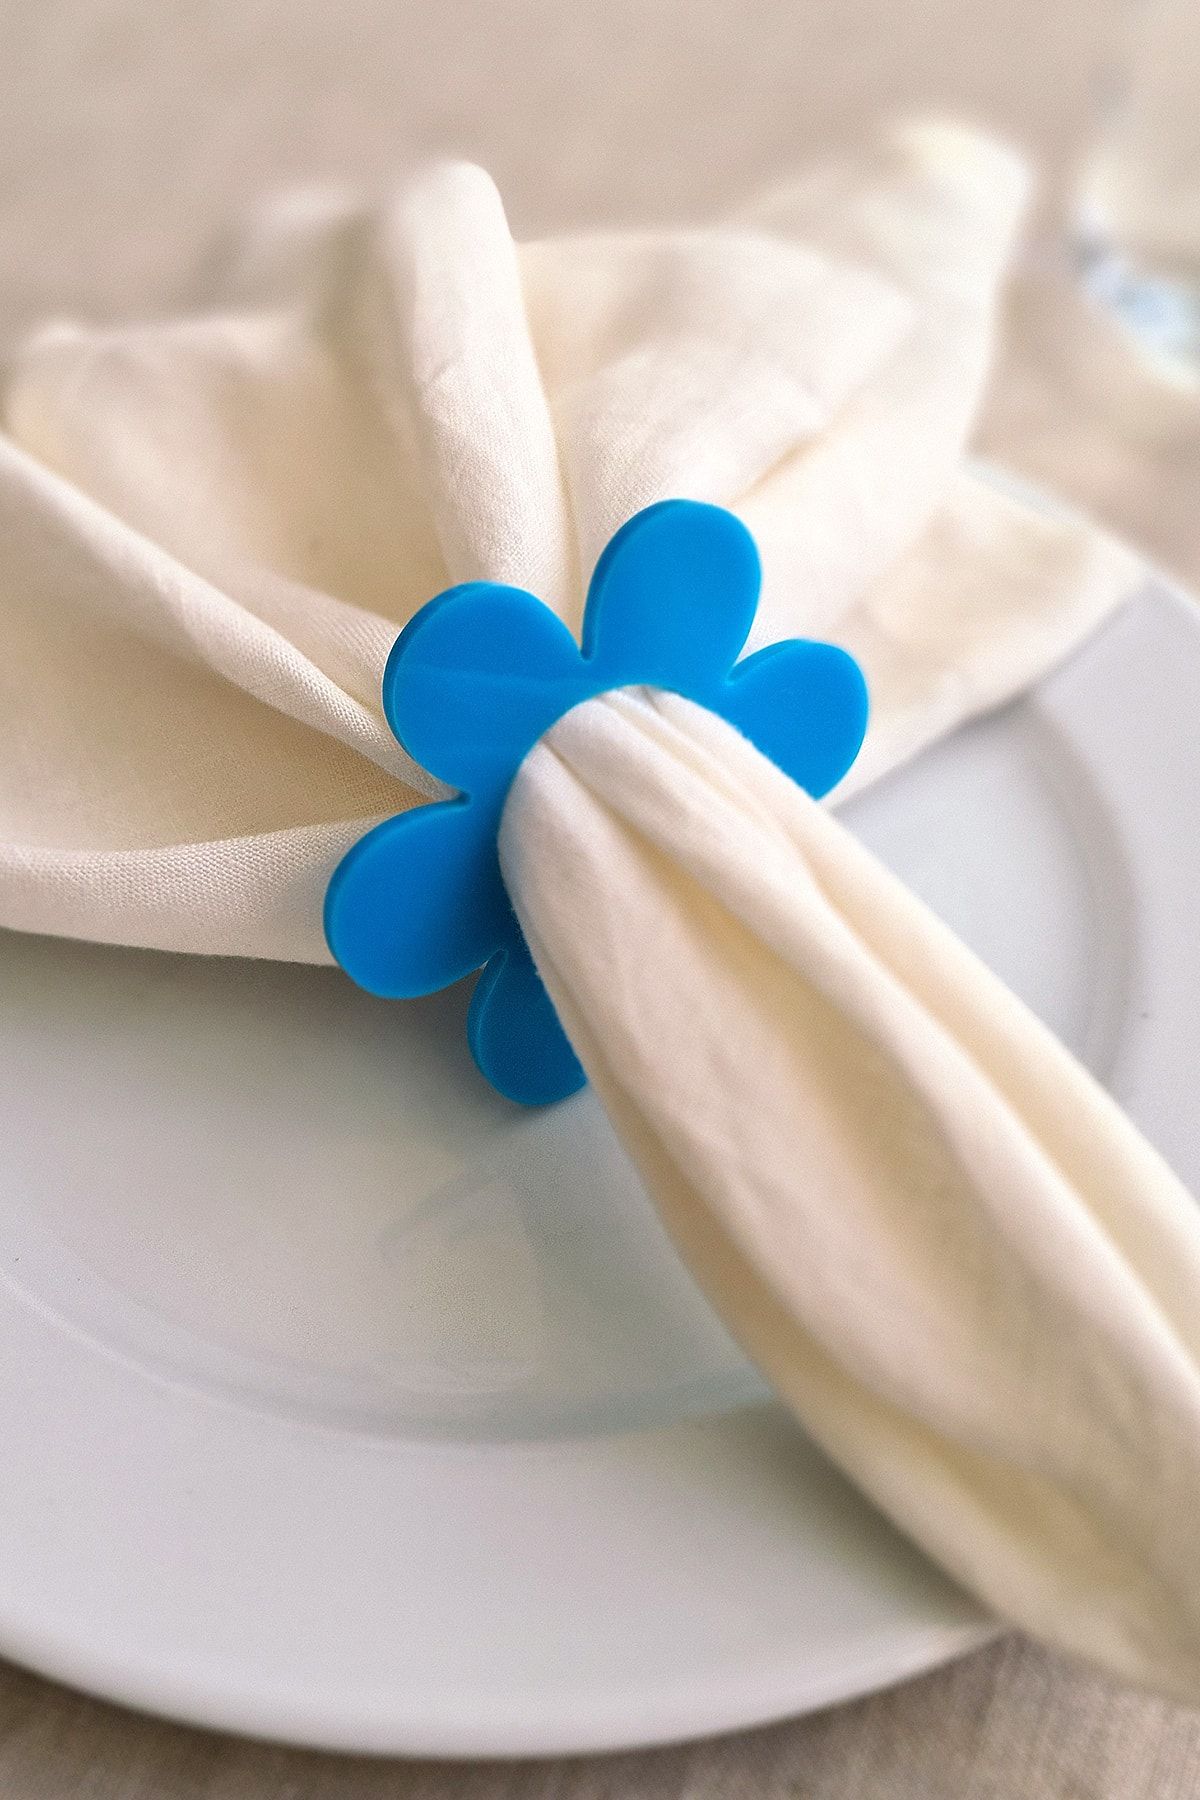 Story Çiçek Desen 6’lı Mavi Renk Akrilik Peçete Halkası Peçete Yüzüğü